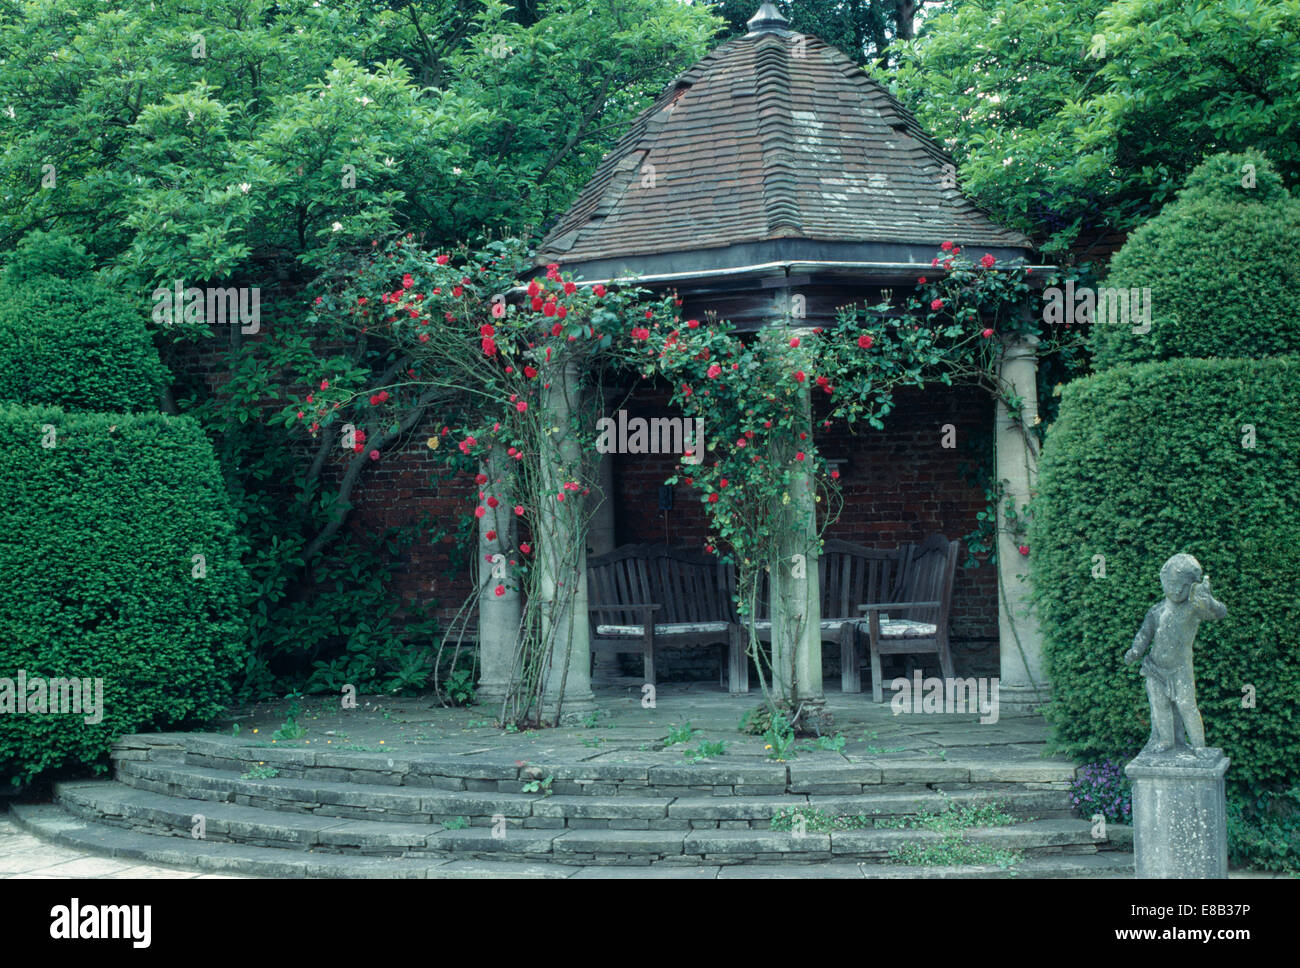 Gradini di pietra fino al gazebo con tetto di tegole e red rose rampicanti in paese grande giardino con siepi tagliate Foto Stock